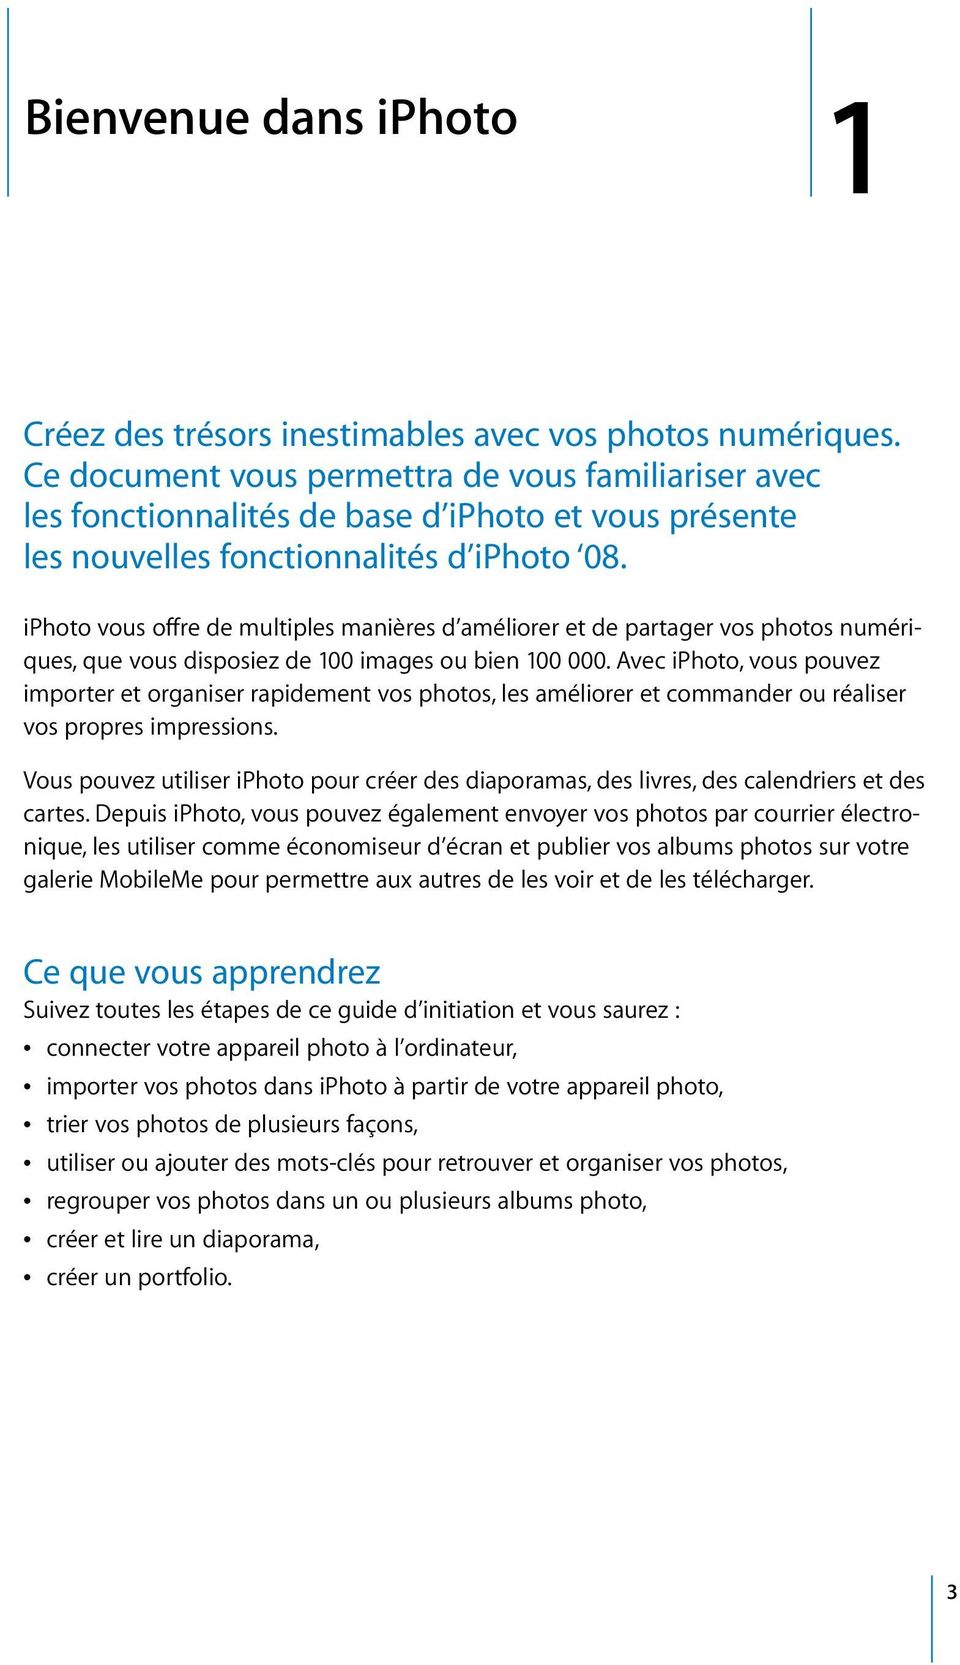 iphoto vous offre de multiples manières d améliorer et de partager vos photos numériques, que vous disposiez de 100 images ou bien 100 000.